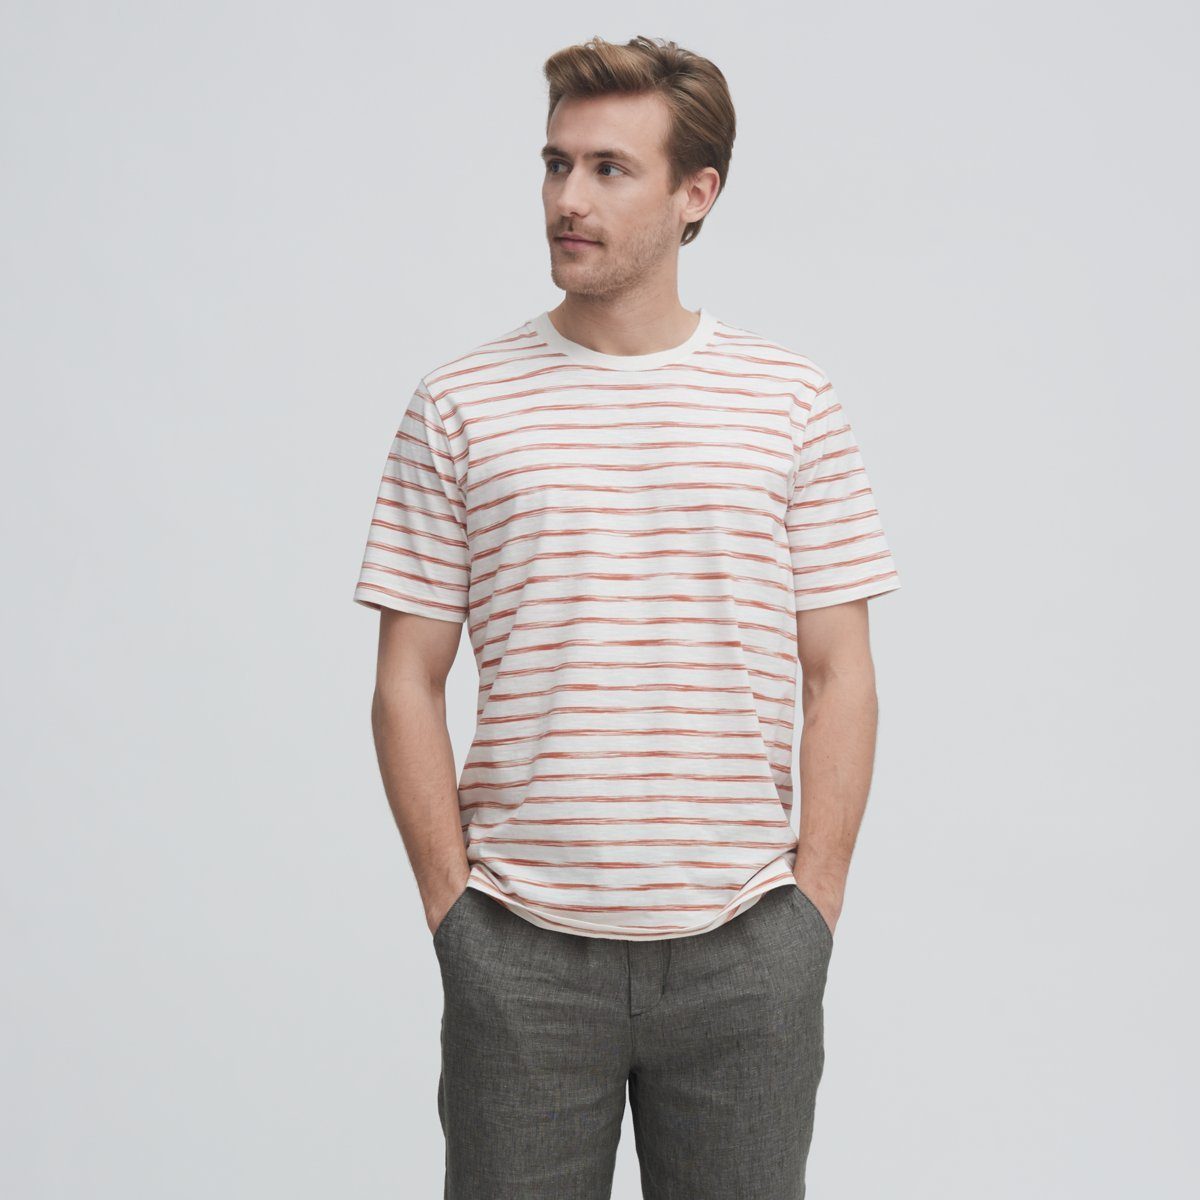 weichem aus besonders Sienna/Offwhite CRAFTS Luftiges ODIN T-Shirt Raw Slub-Garn Design LIVING